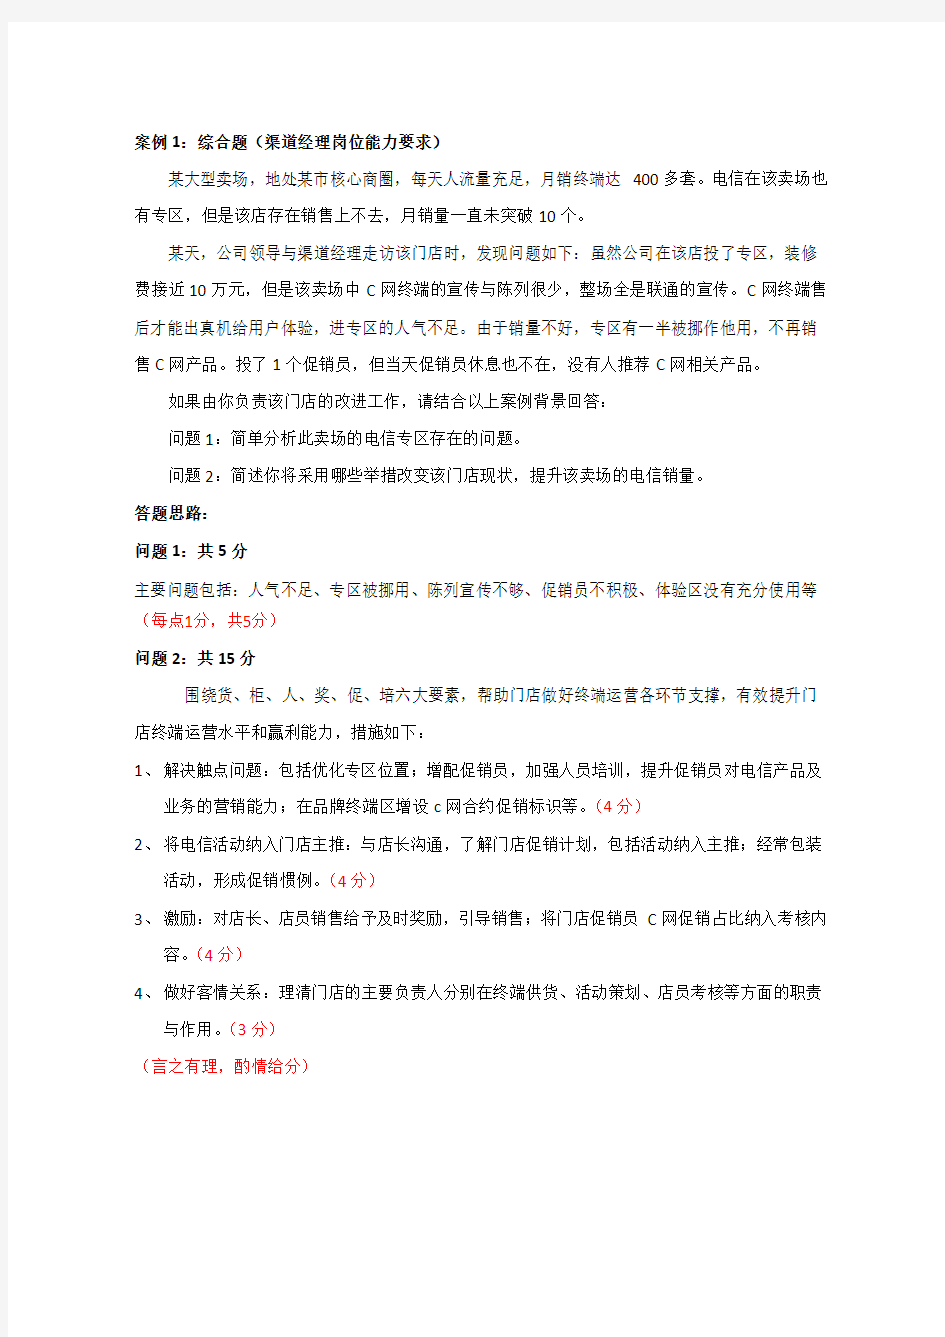 中国电信渠道经理技能认证(四级)实操考试题目及评分标准